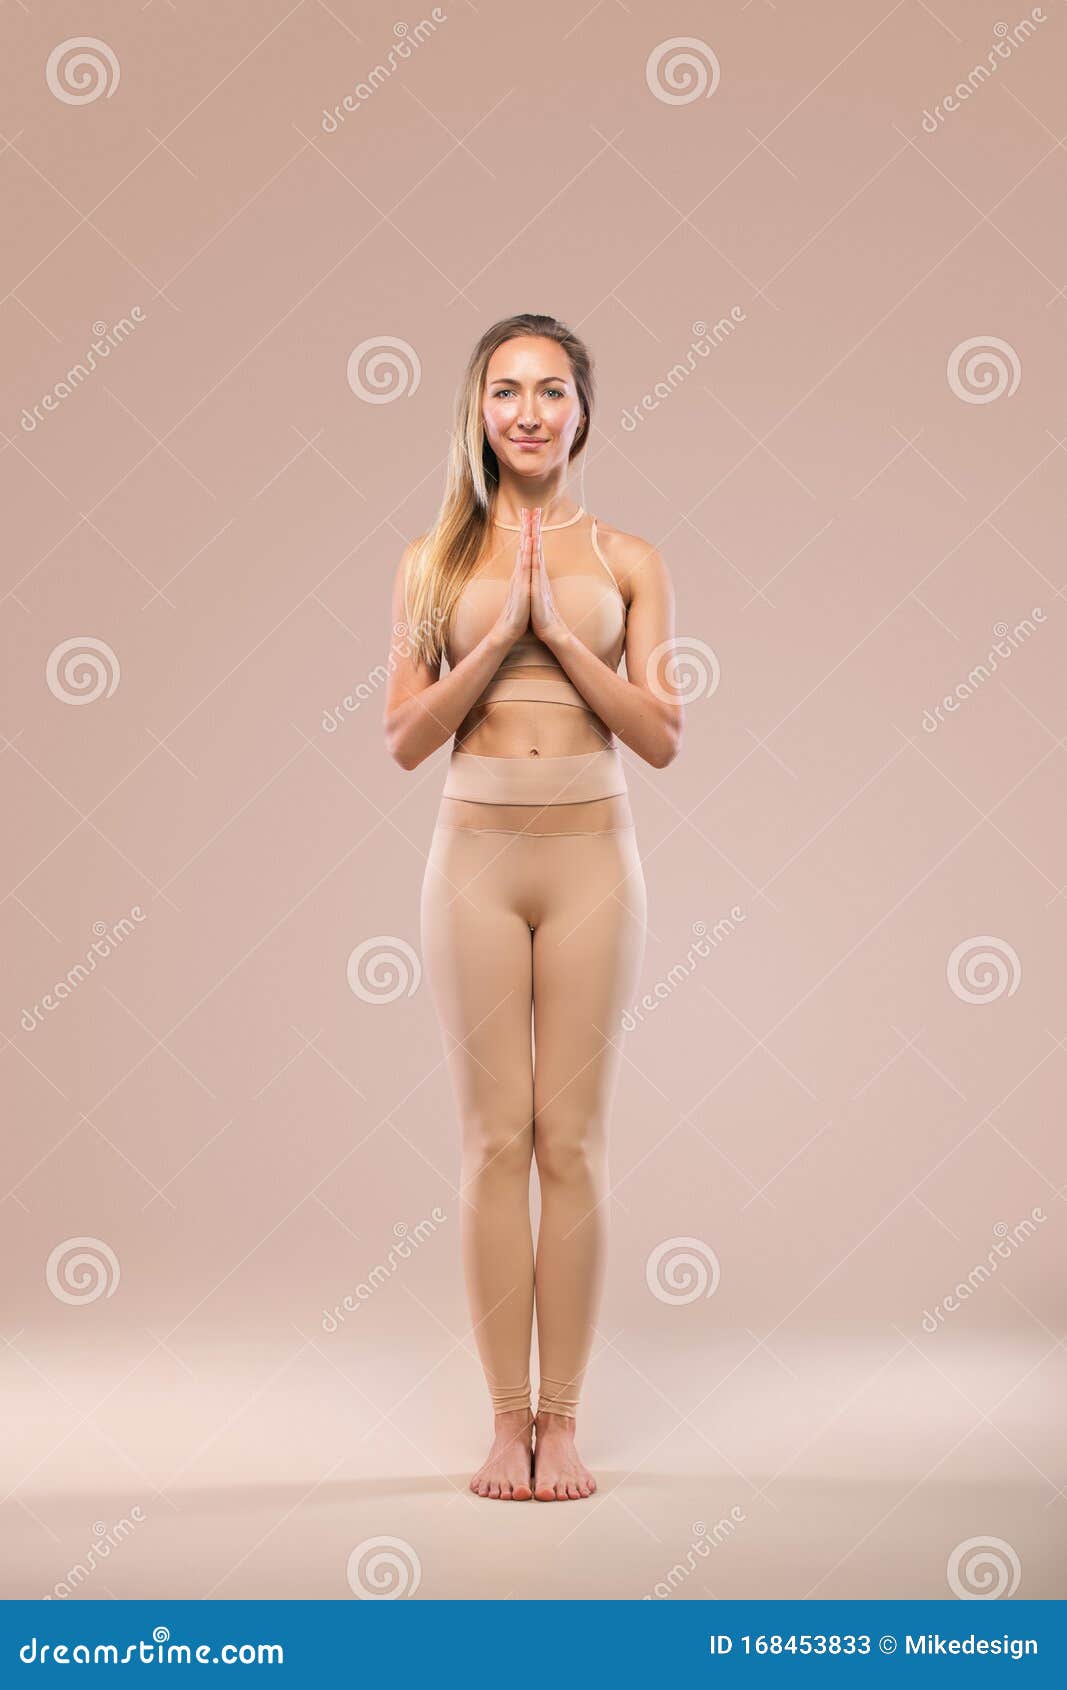 Nude Sports Women